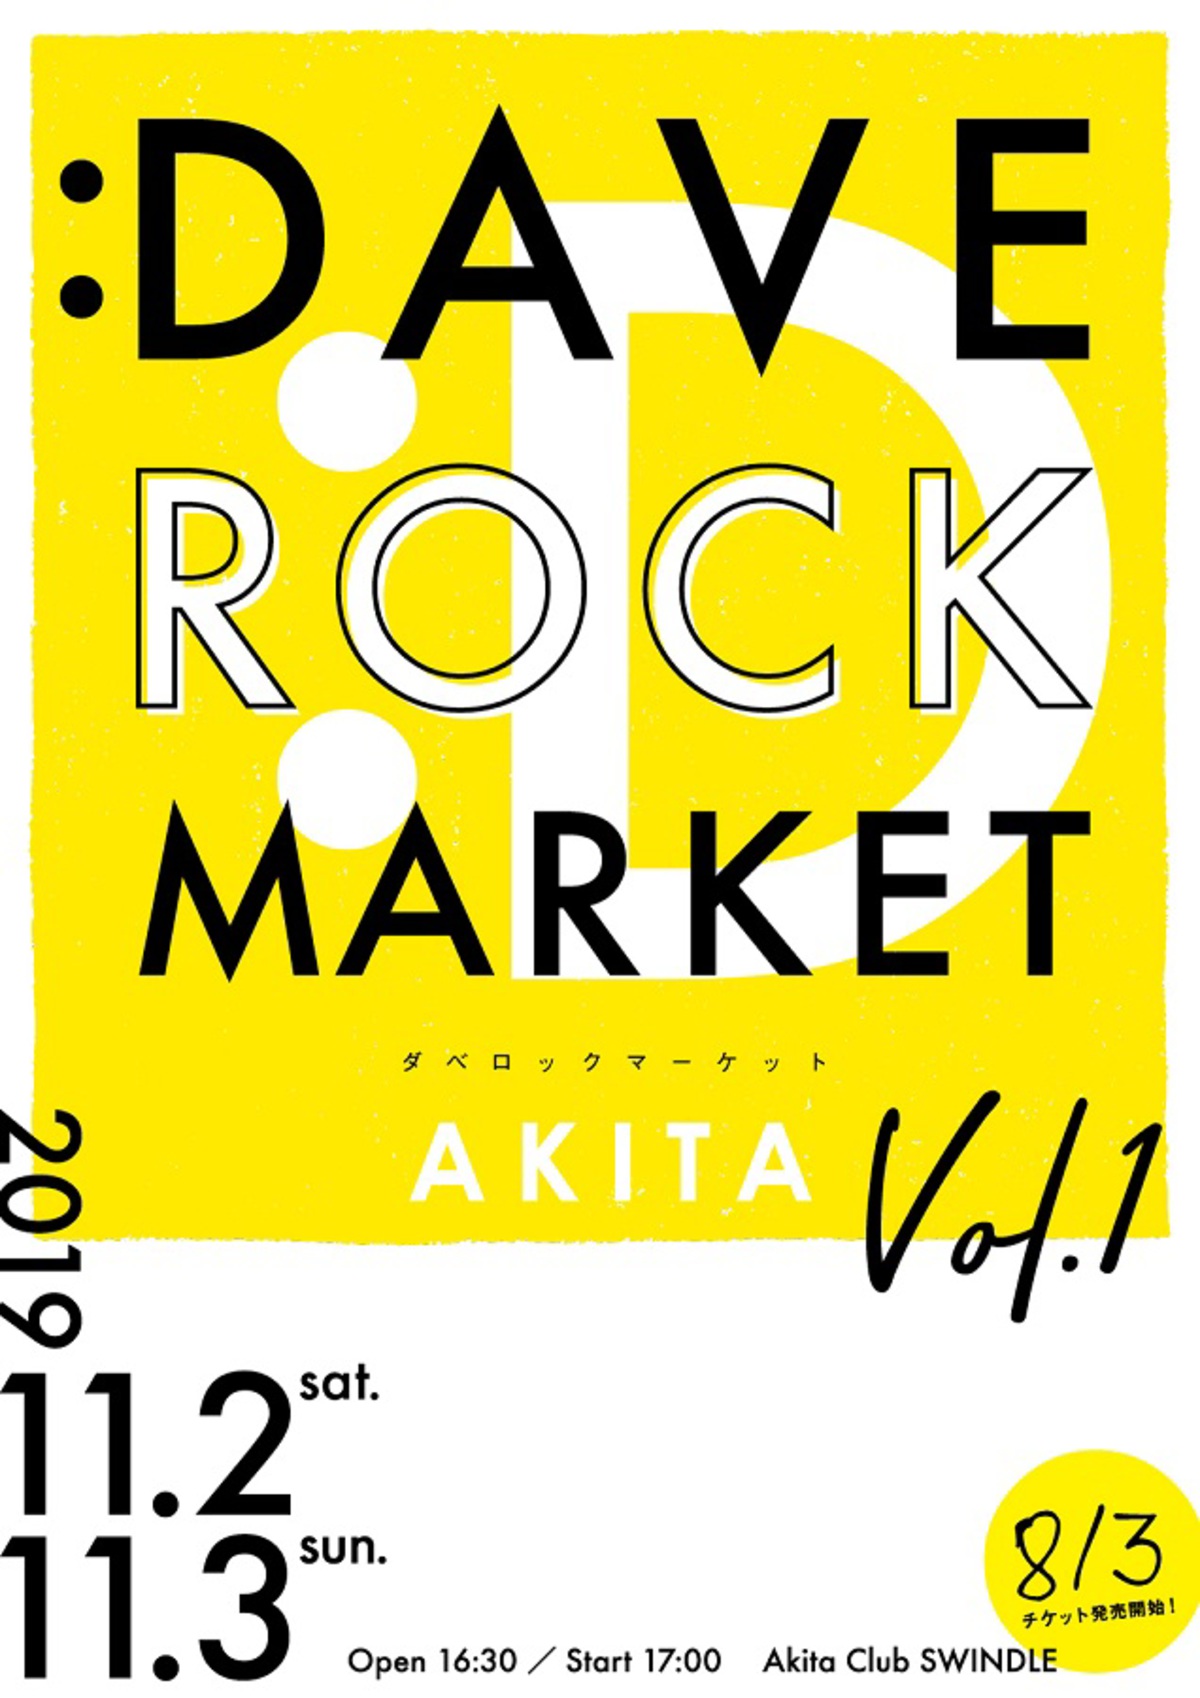 秋田の新イベント Dave Rock Market Akita Vol 1 11 2 3開催決定 第1弾出演アーティストにcinema Staff 忘れらんねえよ決定